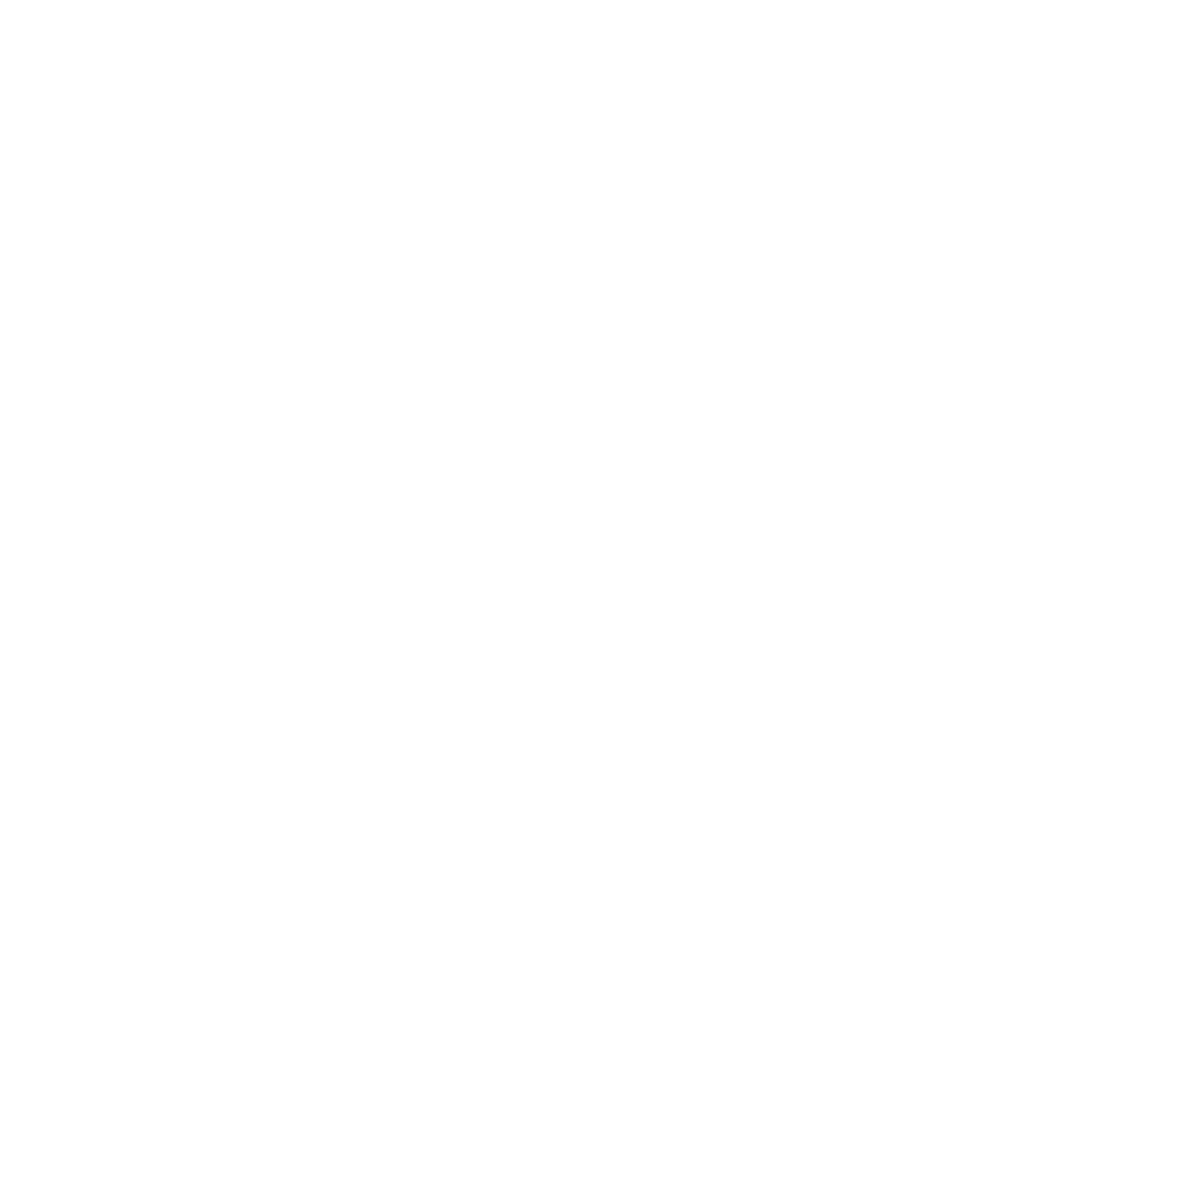 UNEP Neighbourhood Guidelines